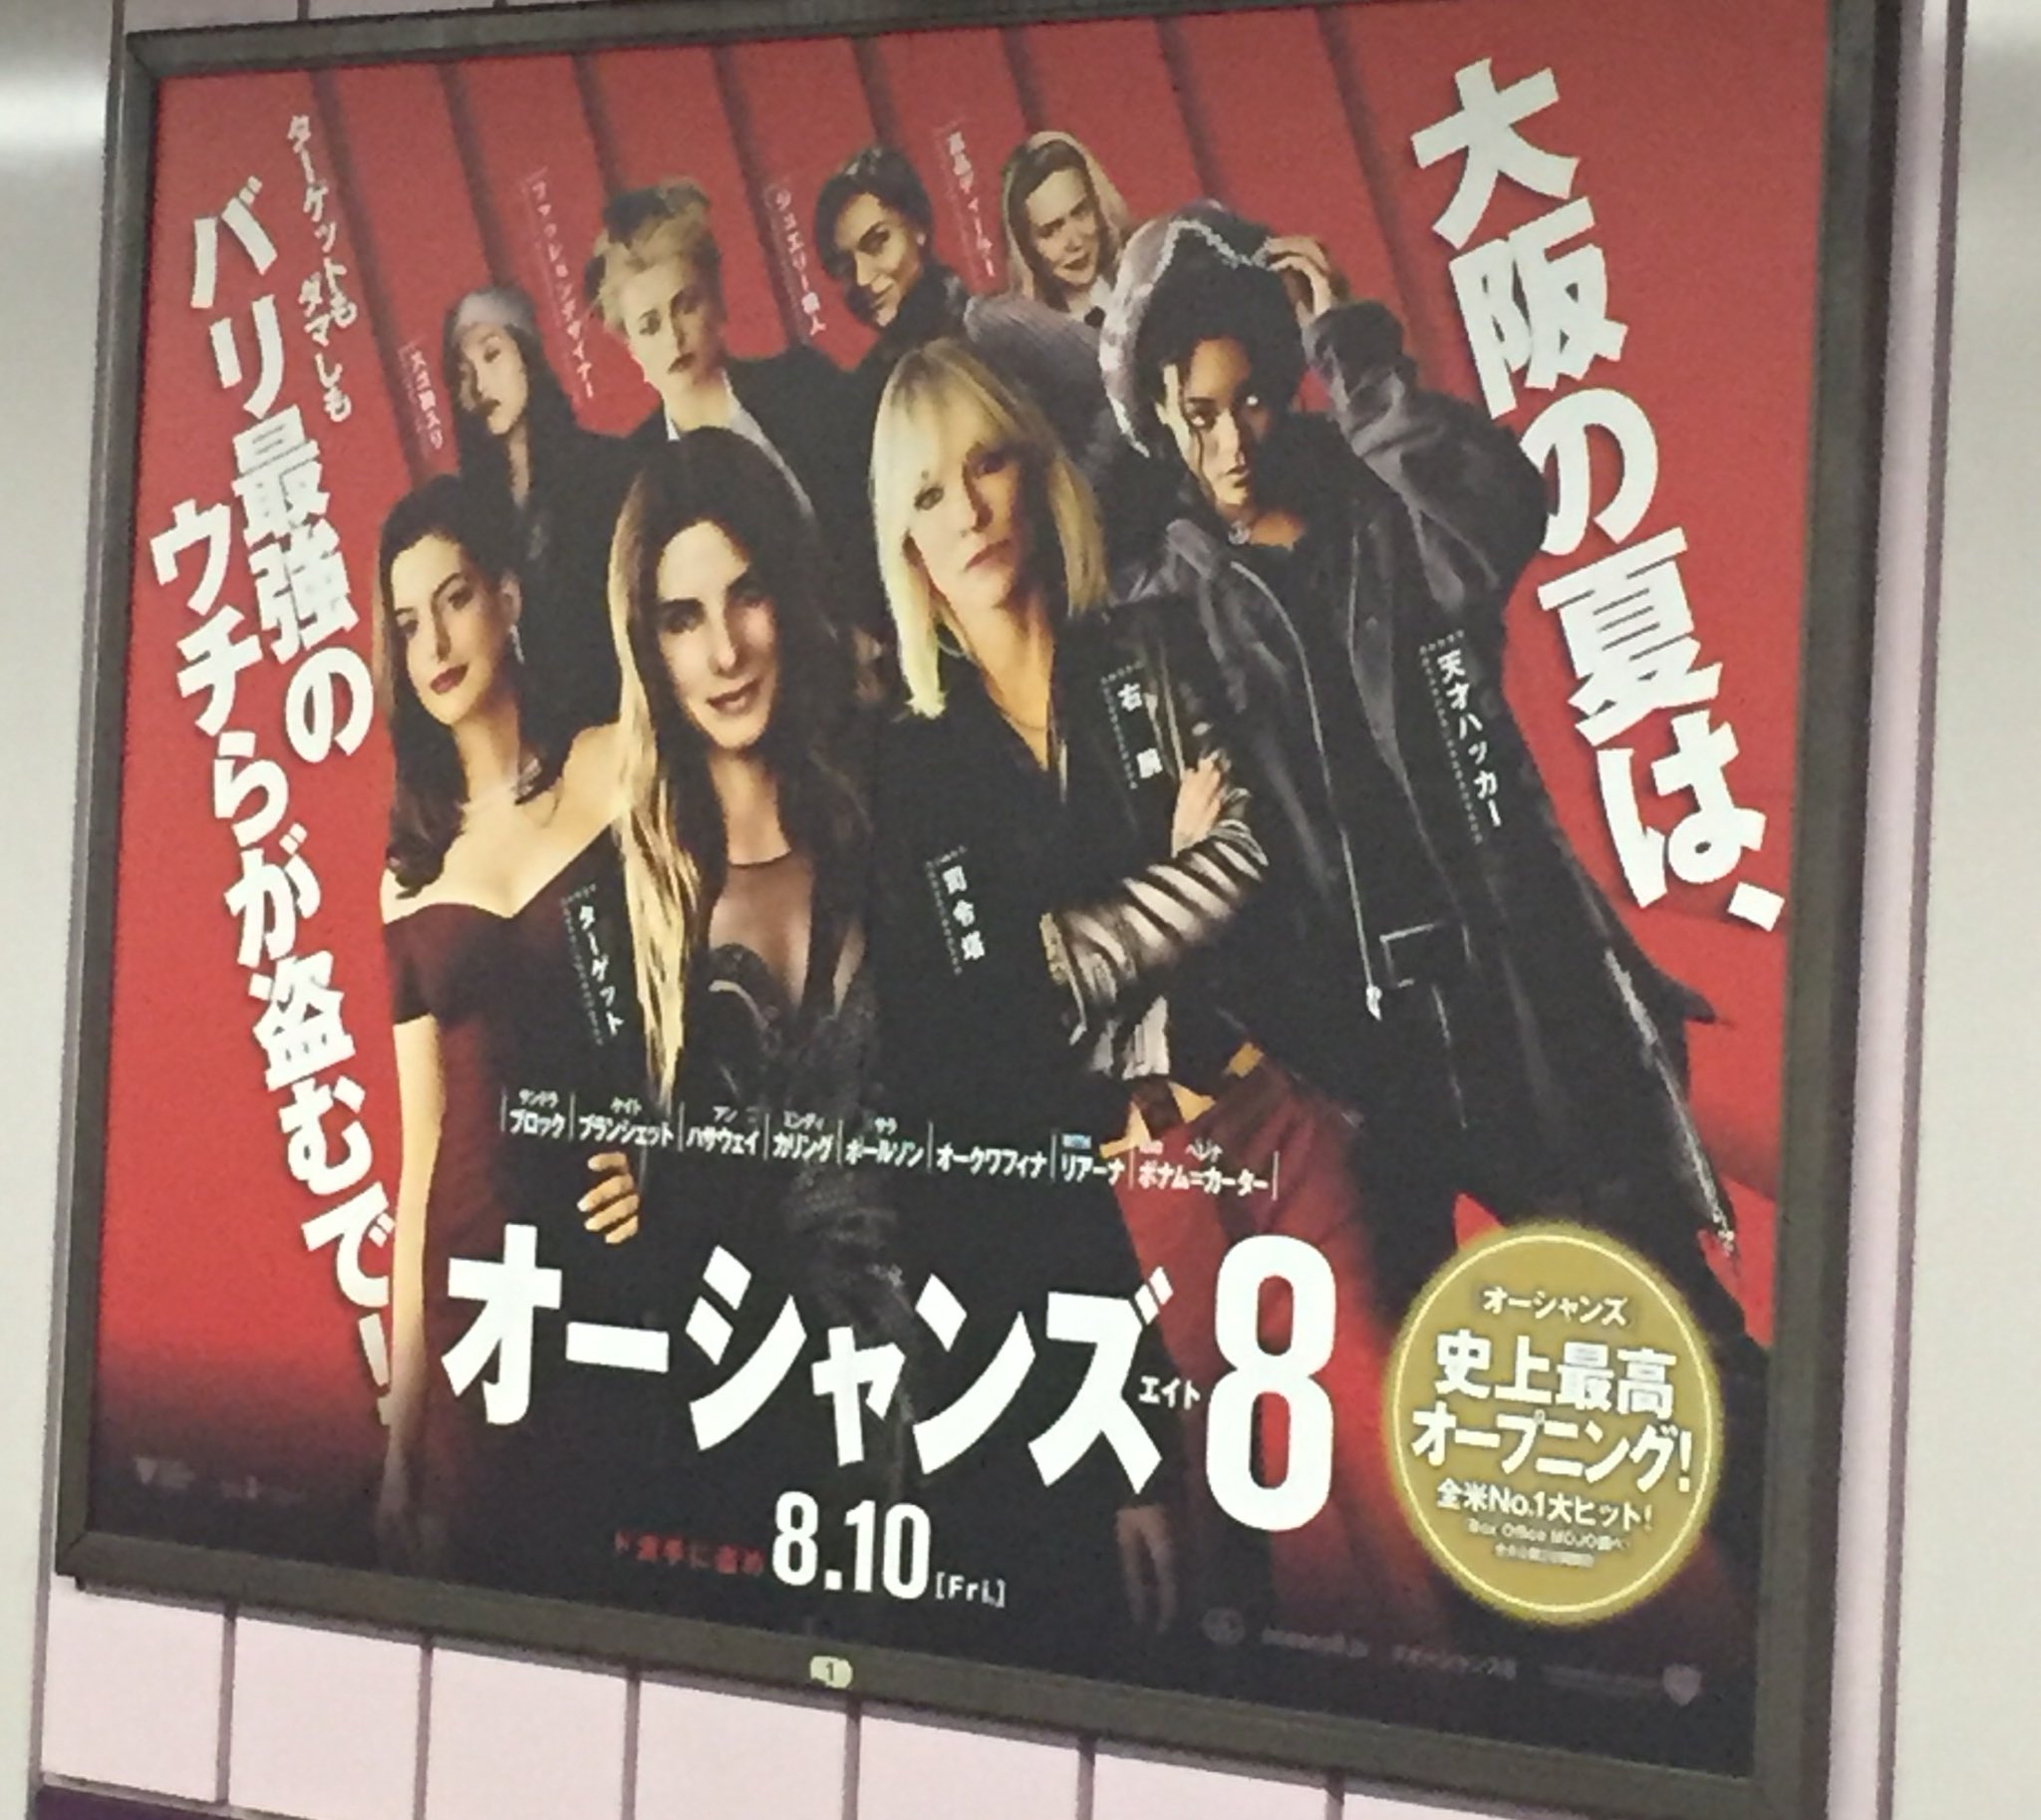 げいまきまき Swash オーシャンズ8 大阪でのポスター 吹き替えもこれでぜひ 盗むでー T Co 6kqdkbxleu Twitter